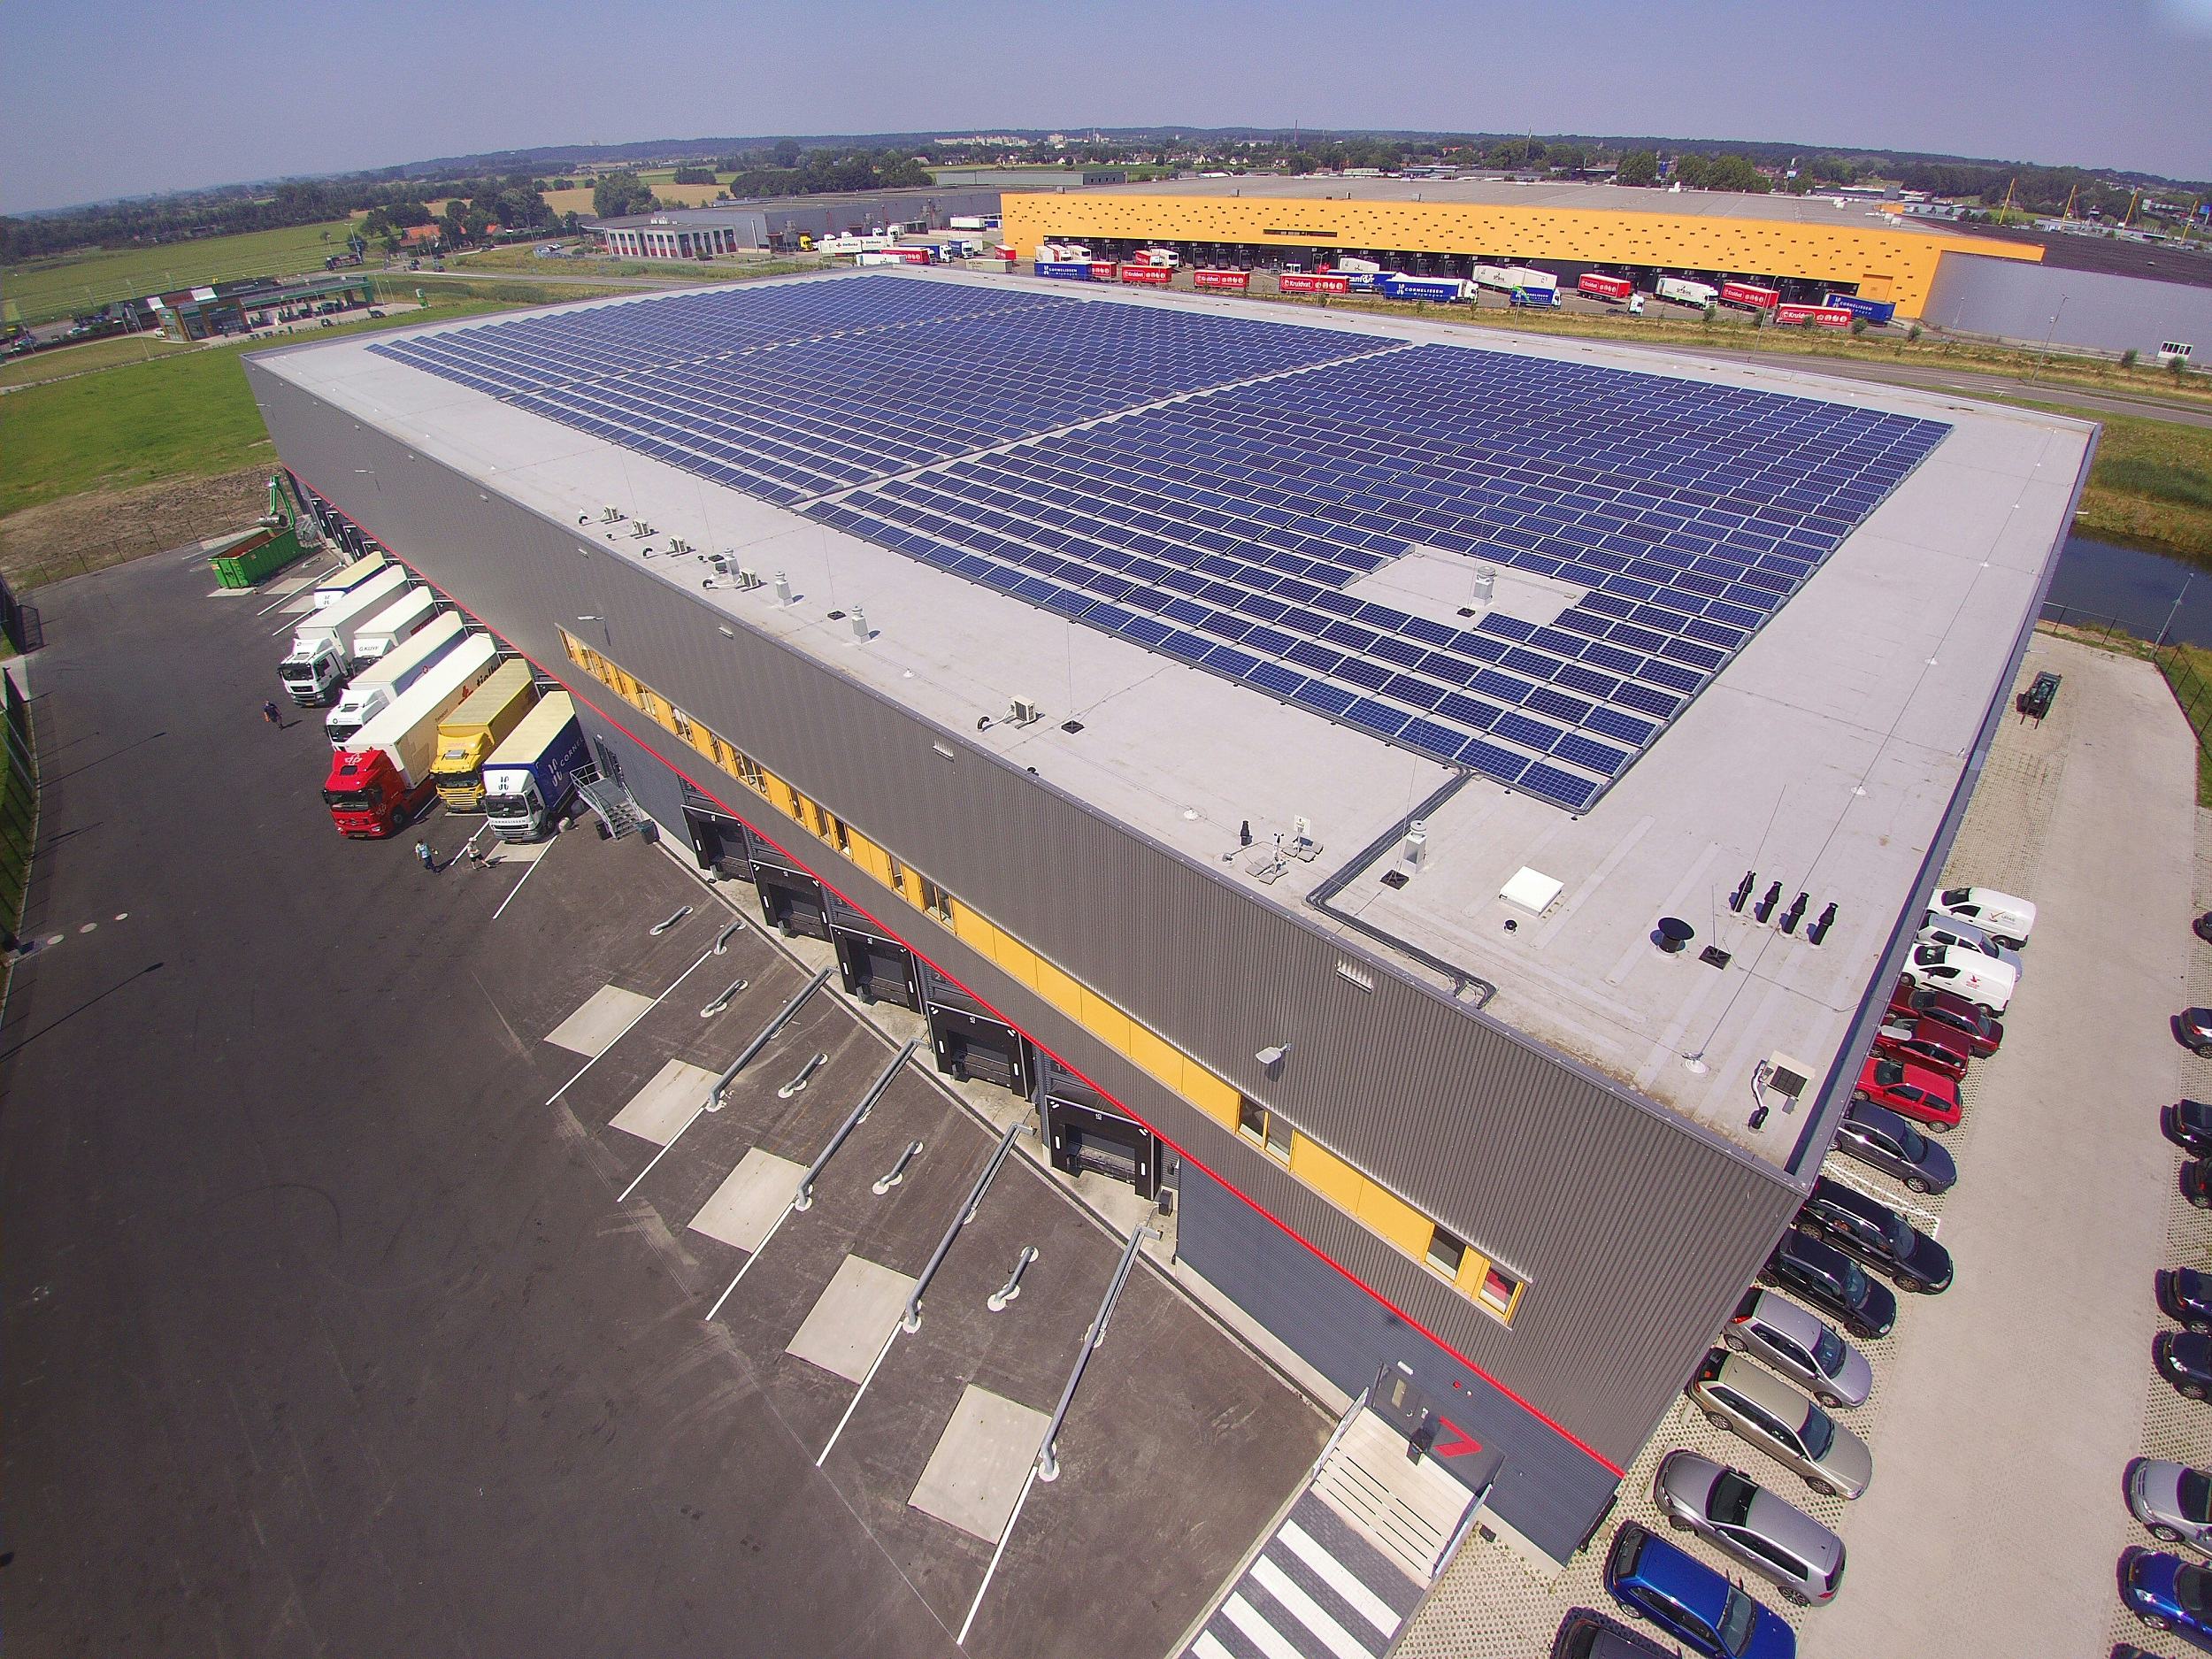 Het nieuwe retourencentrum van Kruidvat heeft op het dak 1.700 zonnepanelen liggen.